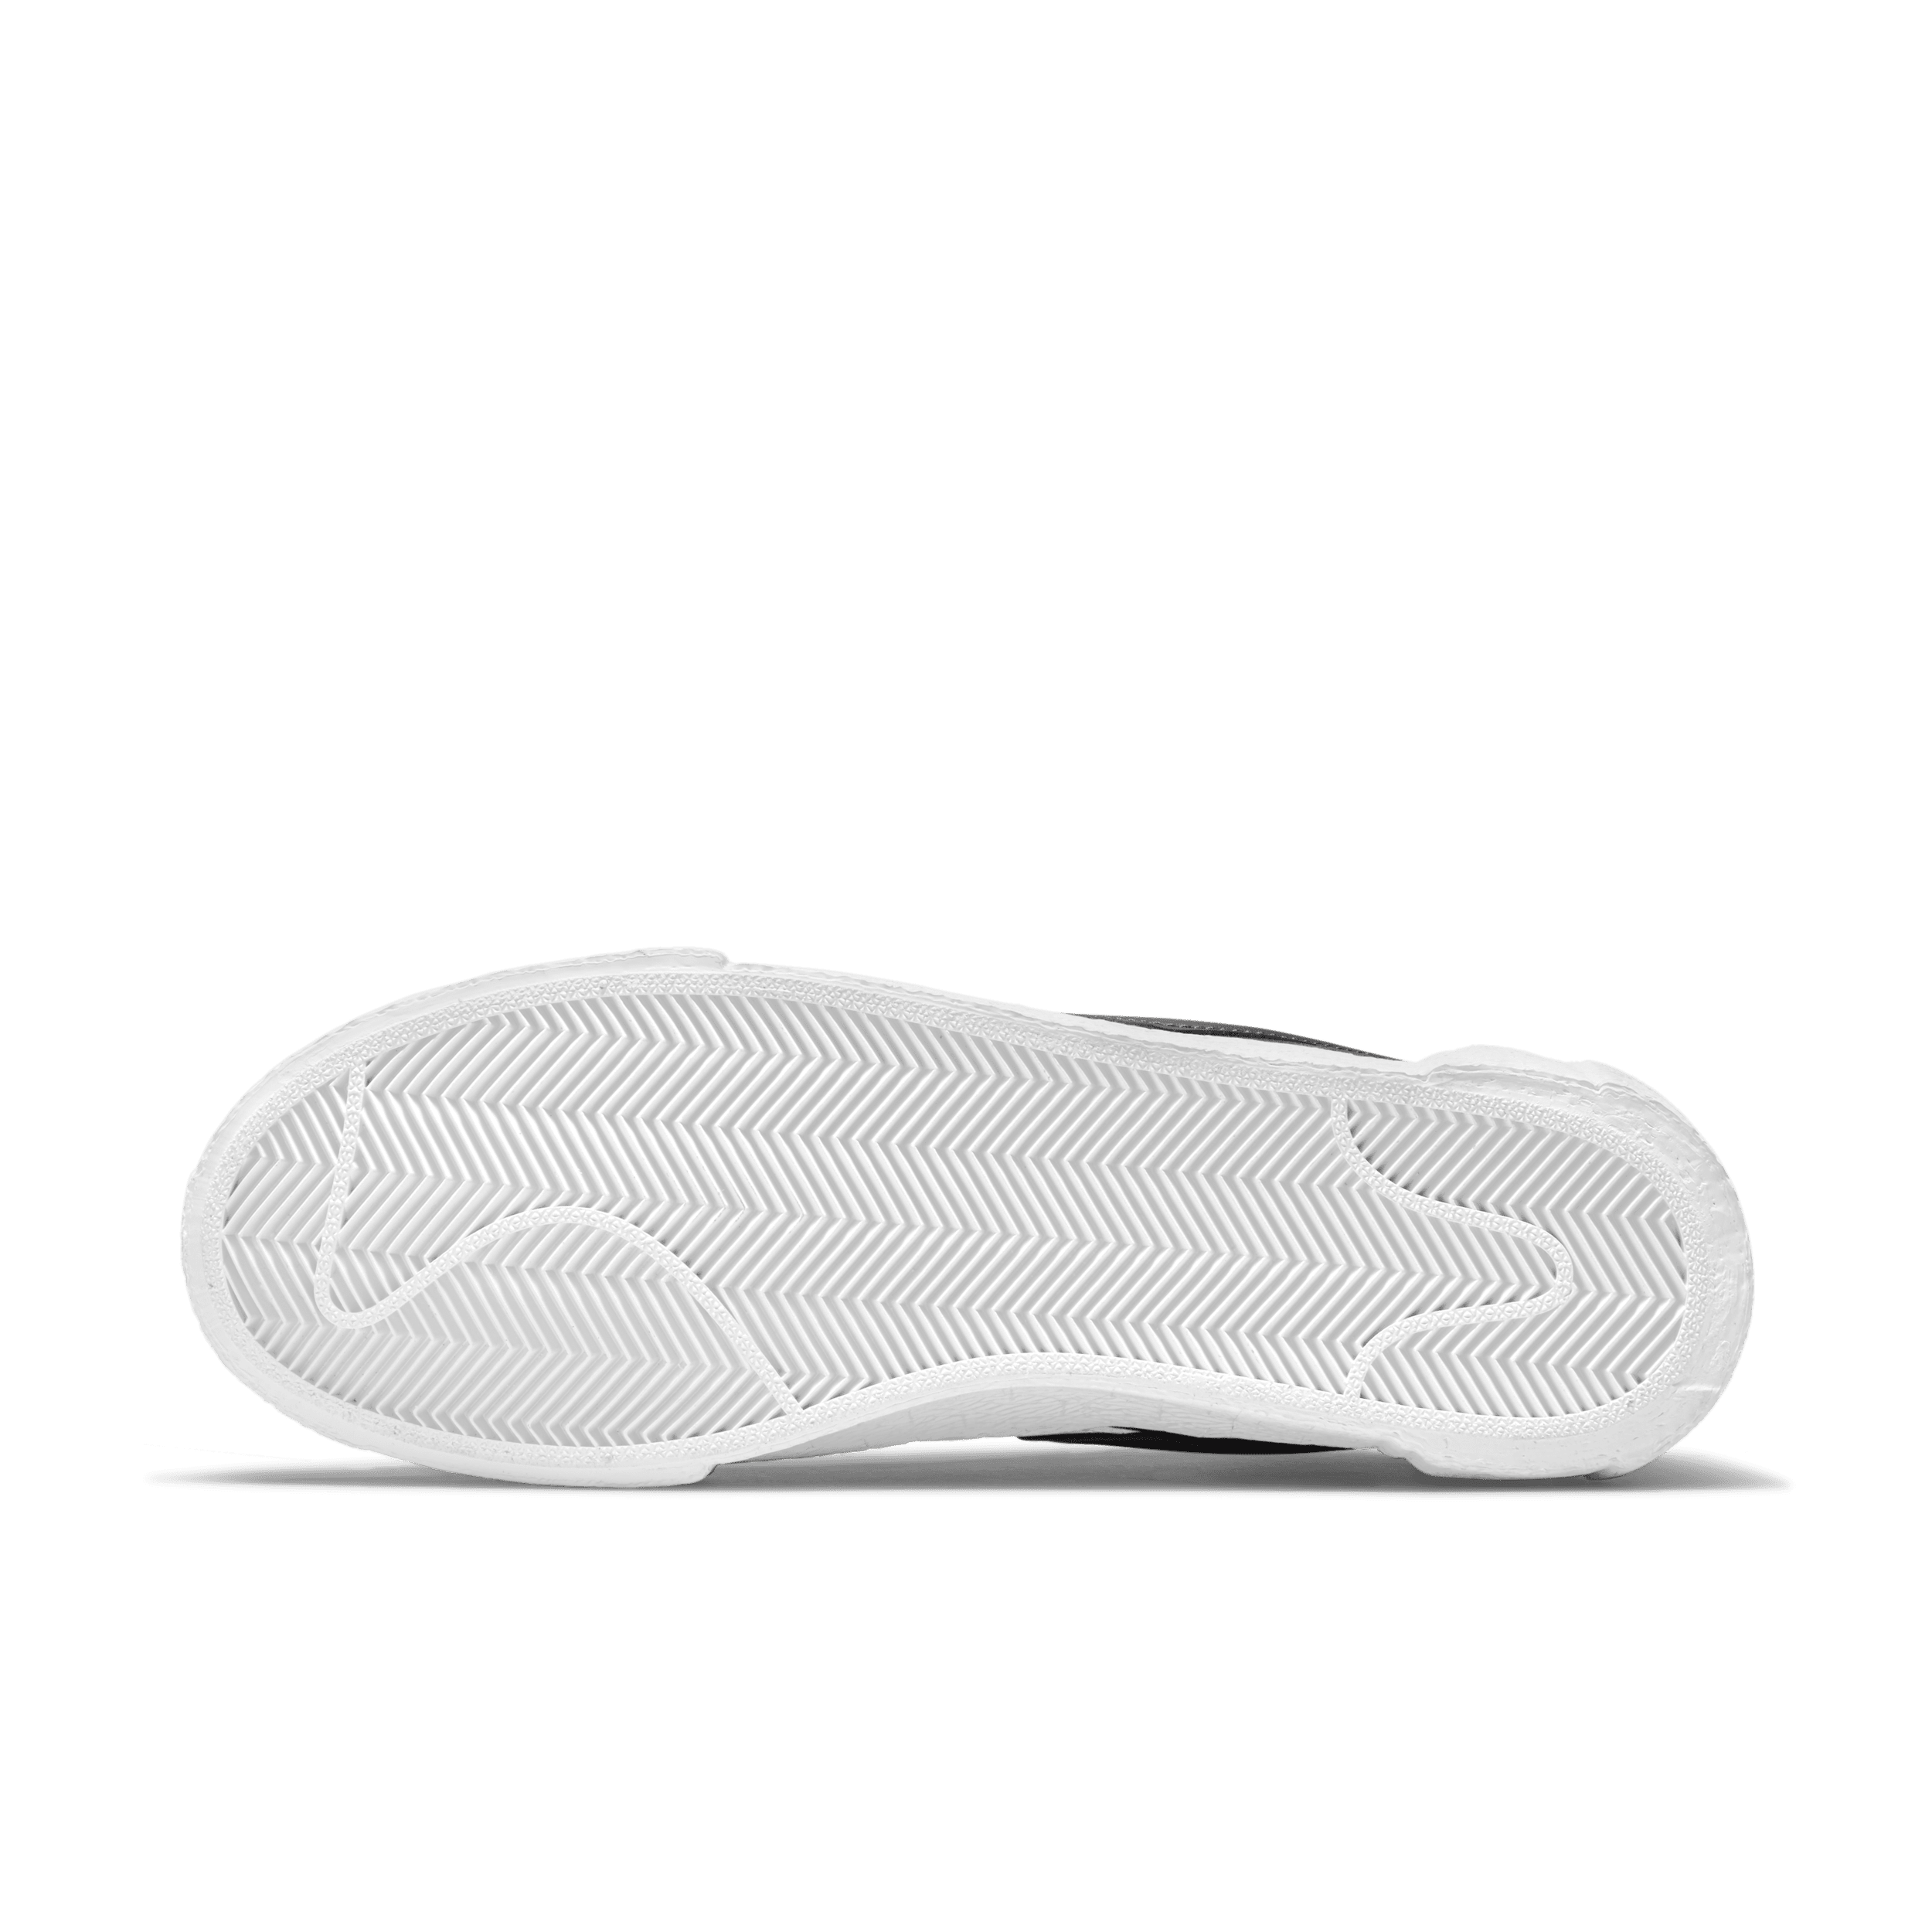 Nike x sacai Blazer Low Schuh - Grau